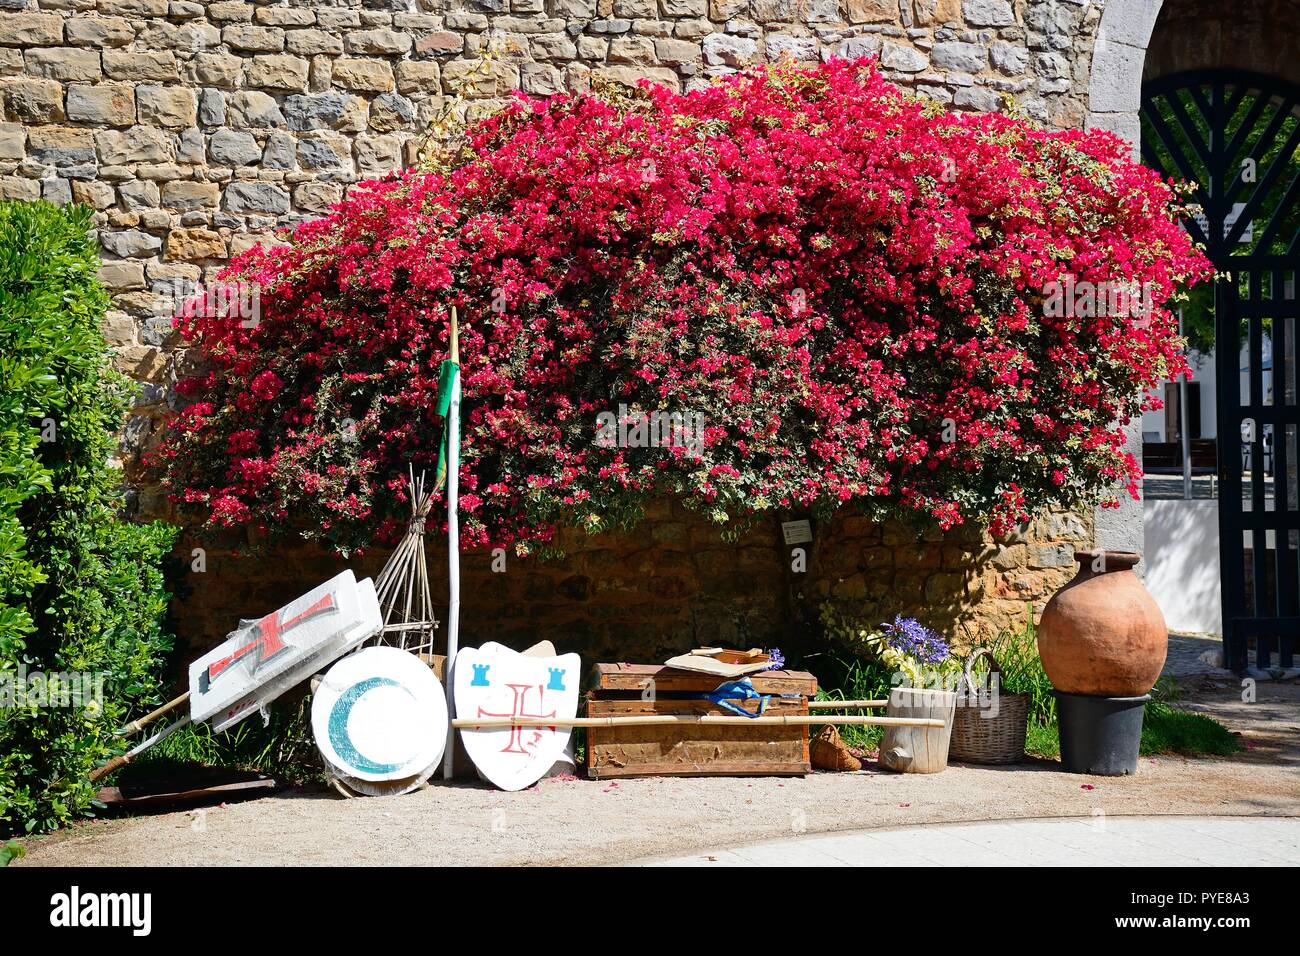 Rievocazione scudi dal castello merlature nel cortile, Tavira, Algarve, Portogallo, dell'Europa. Foto Stock